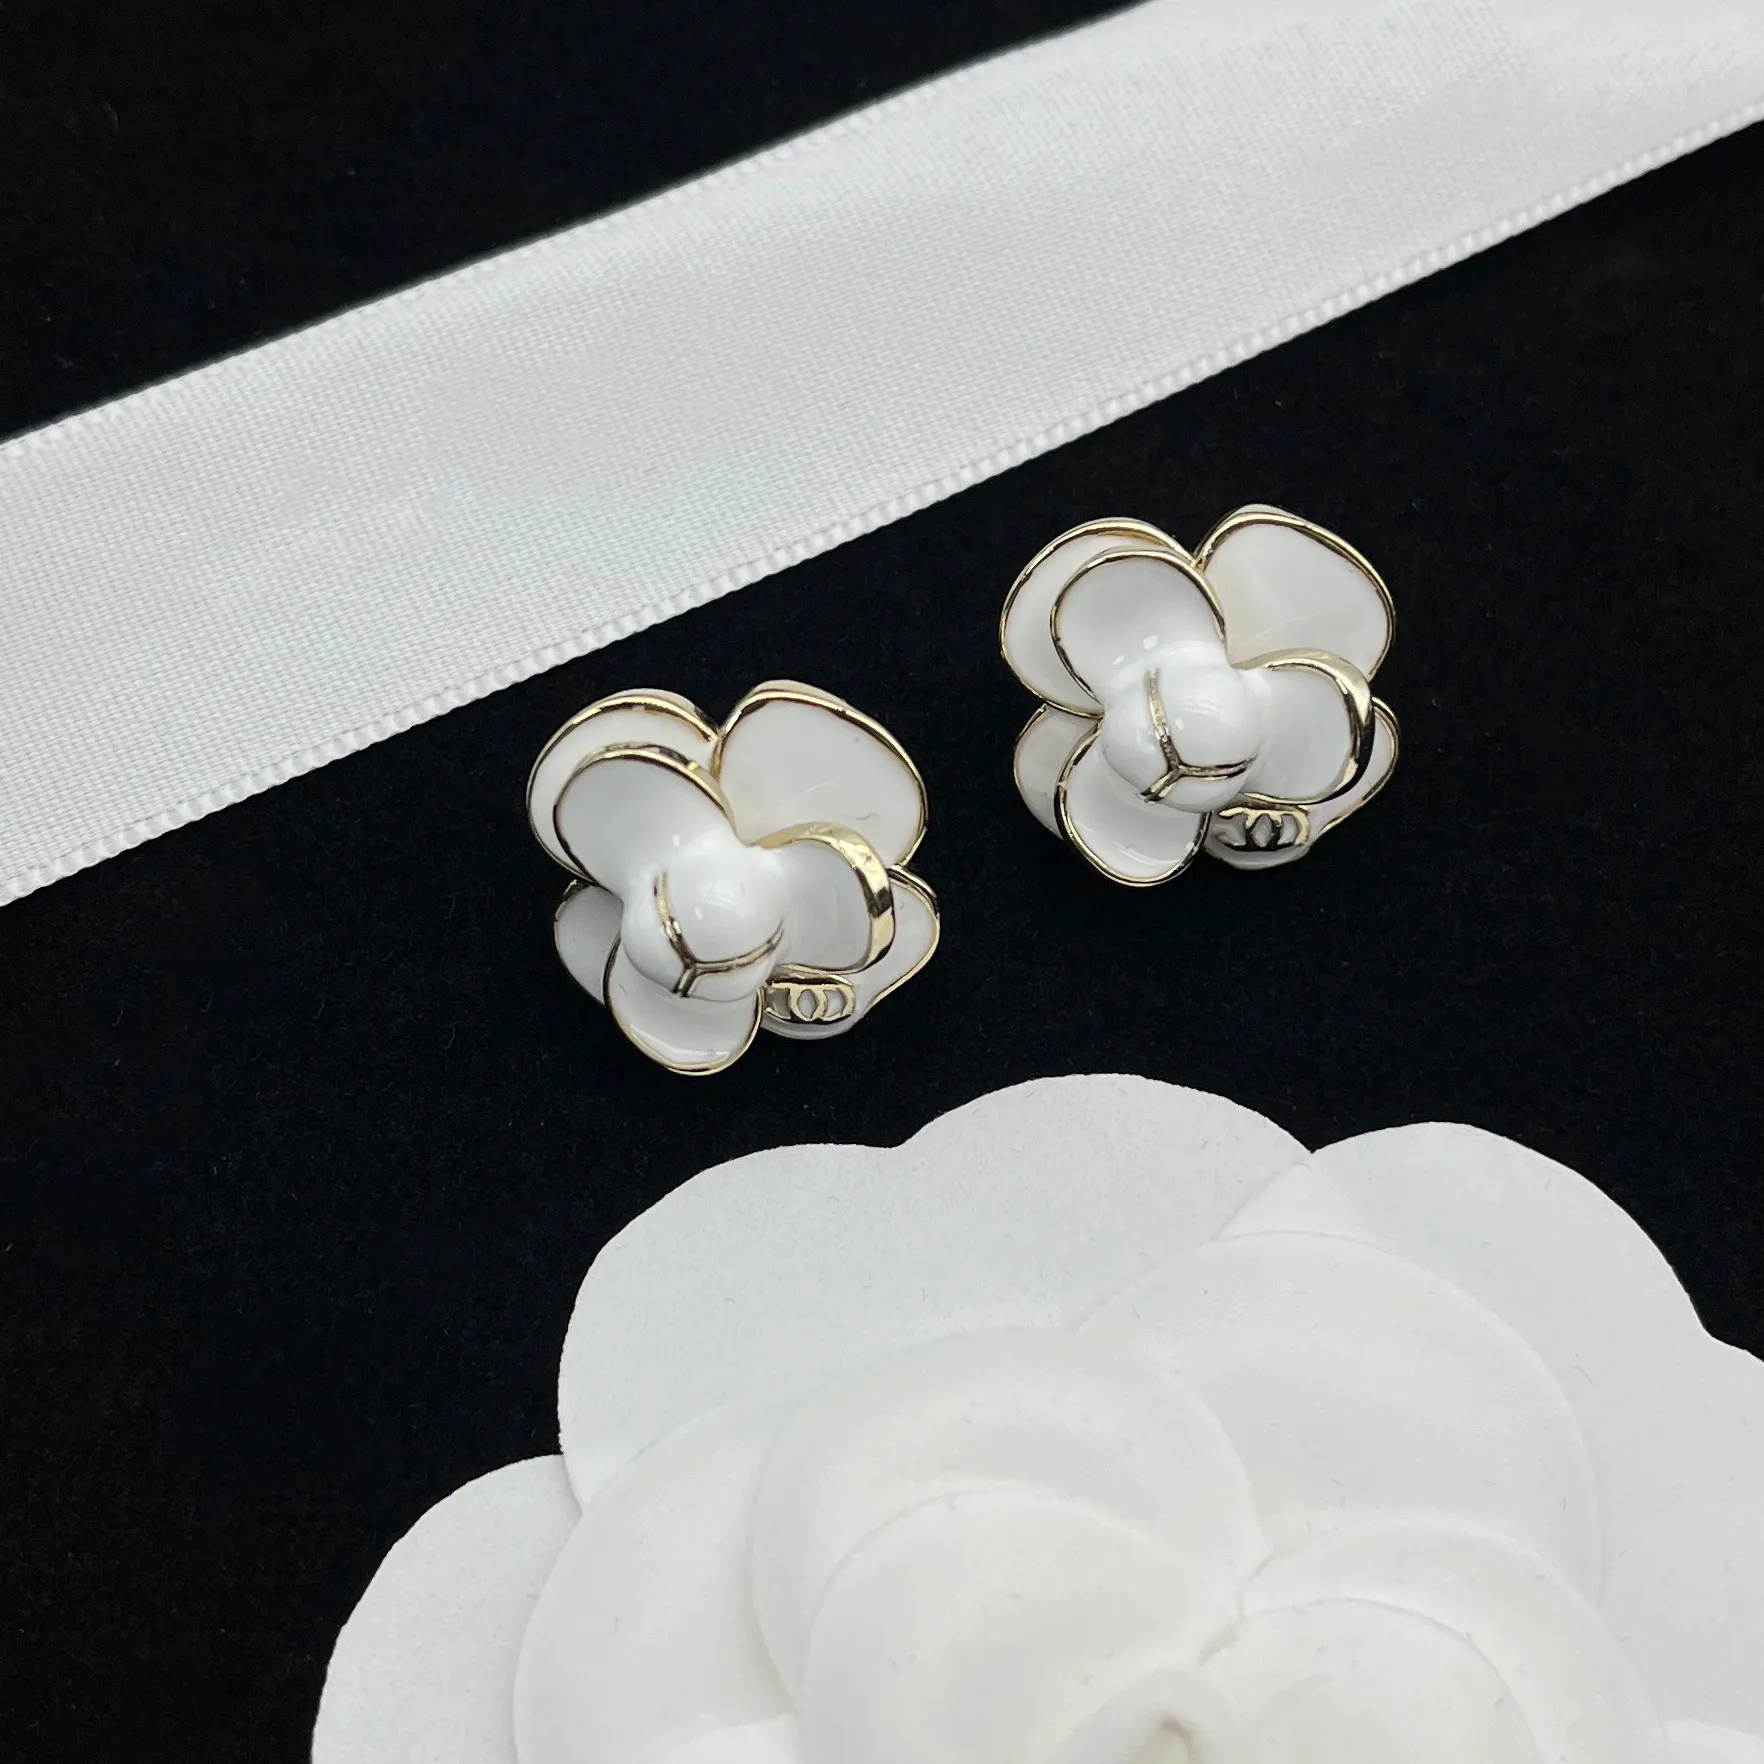 Premium Lüks Mektup Küpeler Cazibe Moda Tasarımcı Küpeler 18K Altın Kaplamalı Güzel Takı Klasik Kıdemli Logo Gençler Çift Düğün Mücevher Hediyeleri Kutu